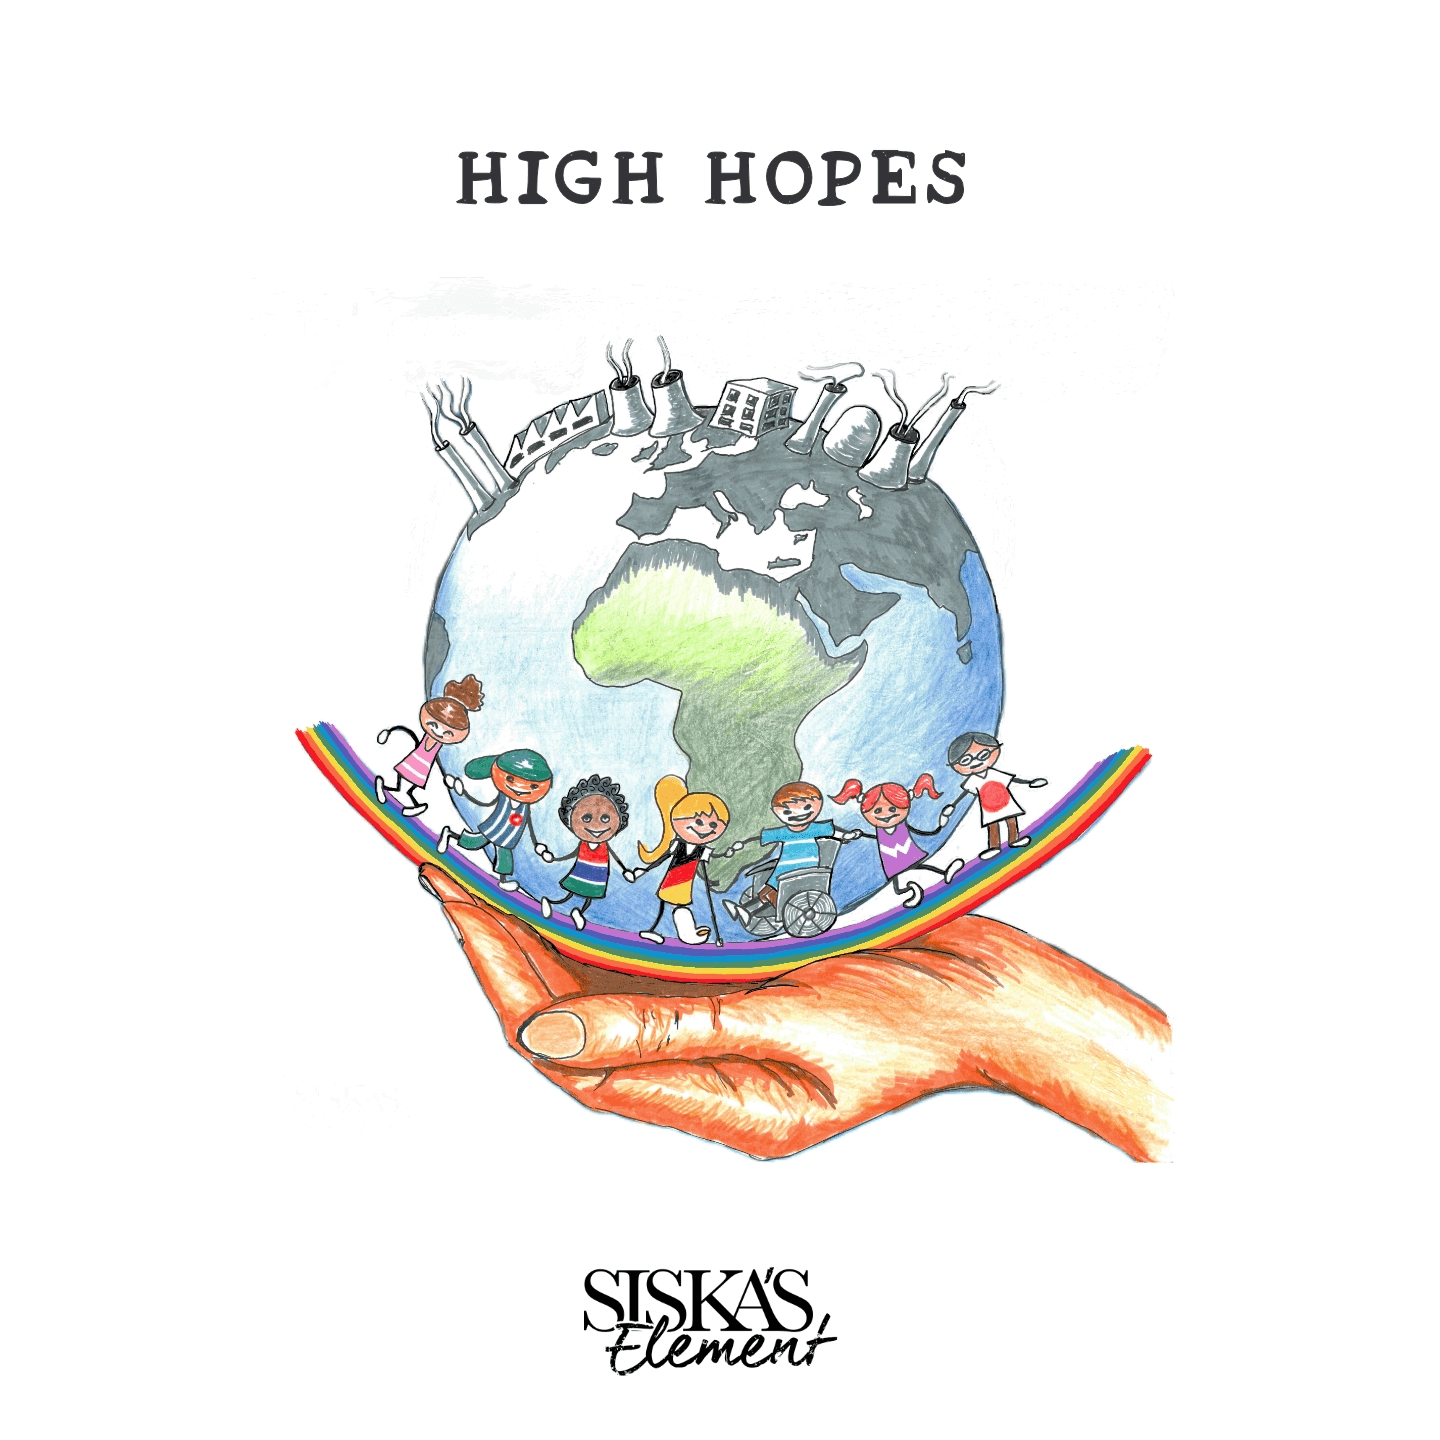 High Hopes: Music for a Better World